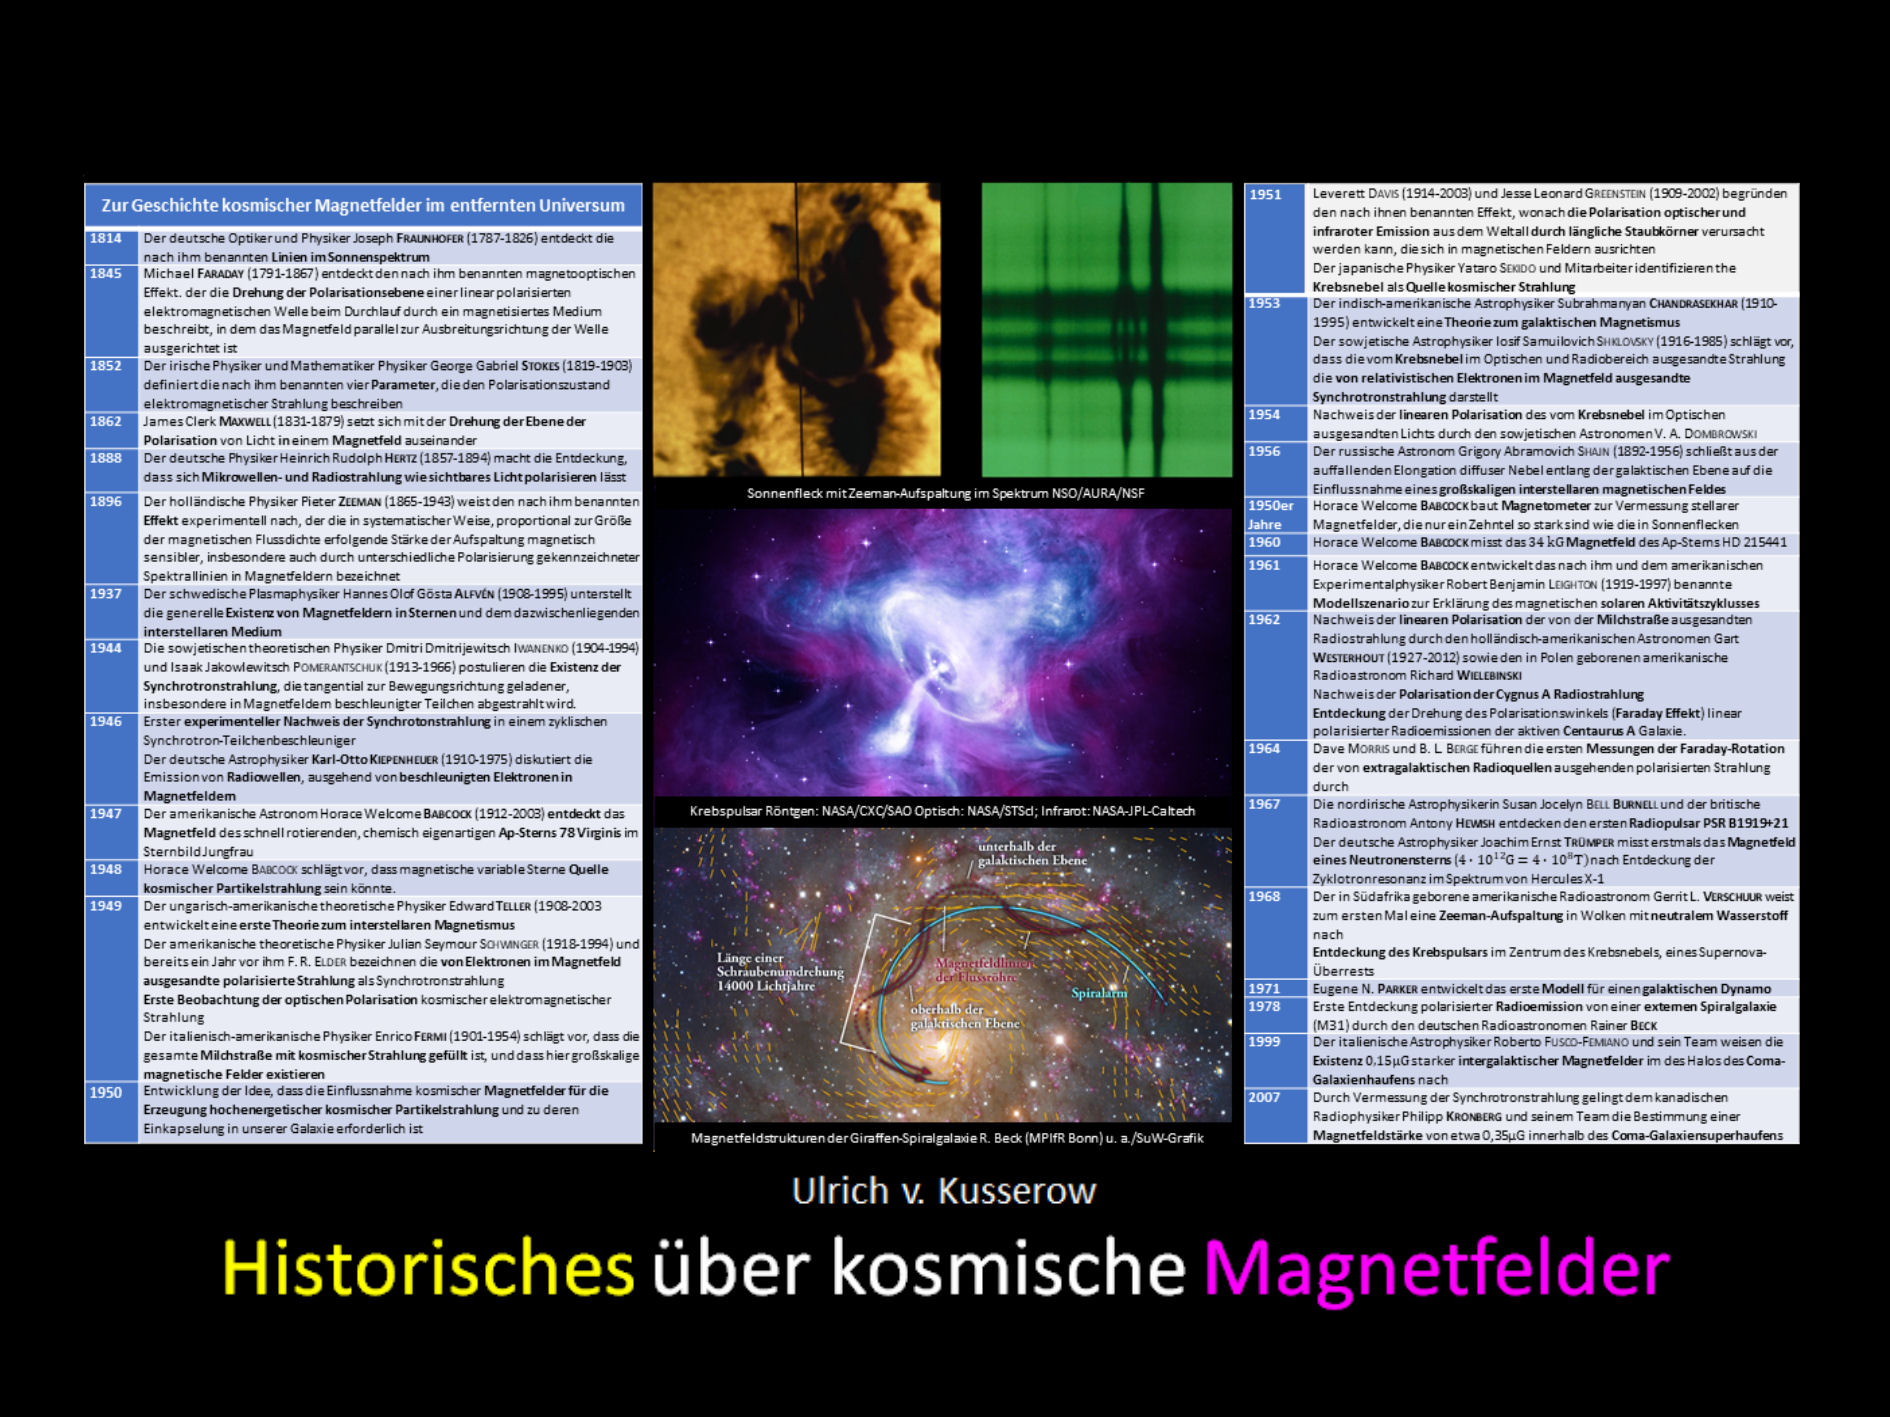 Historisches ueber kosmische Magnetfelder